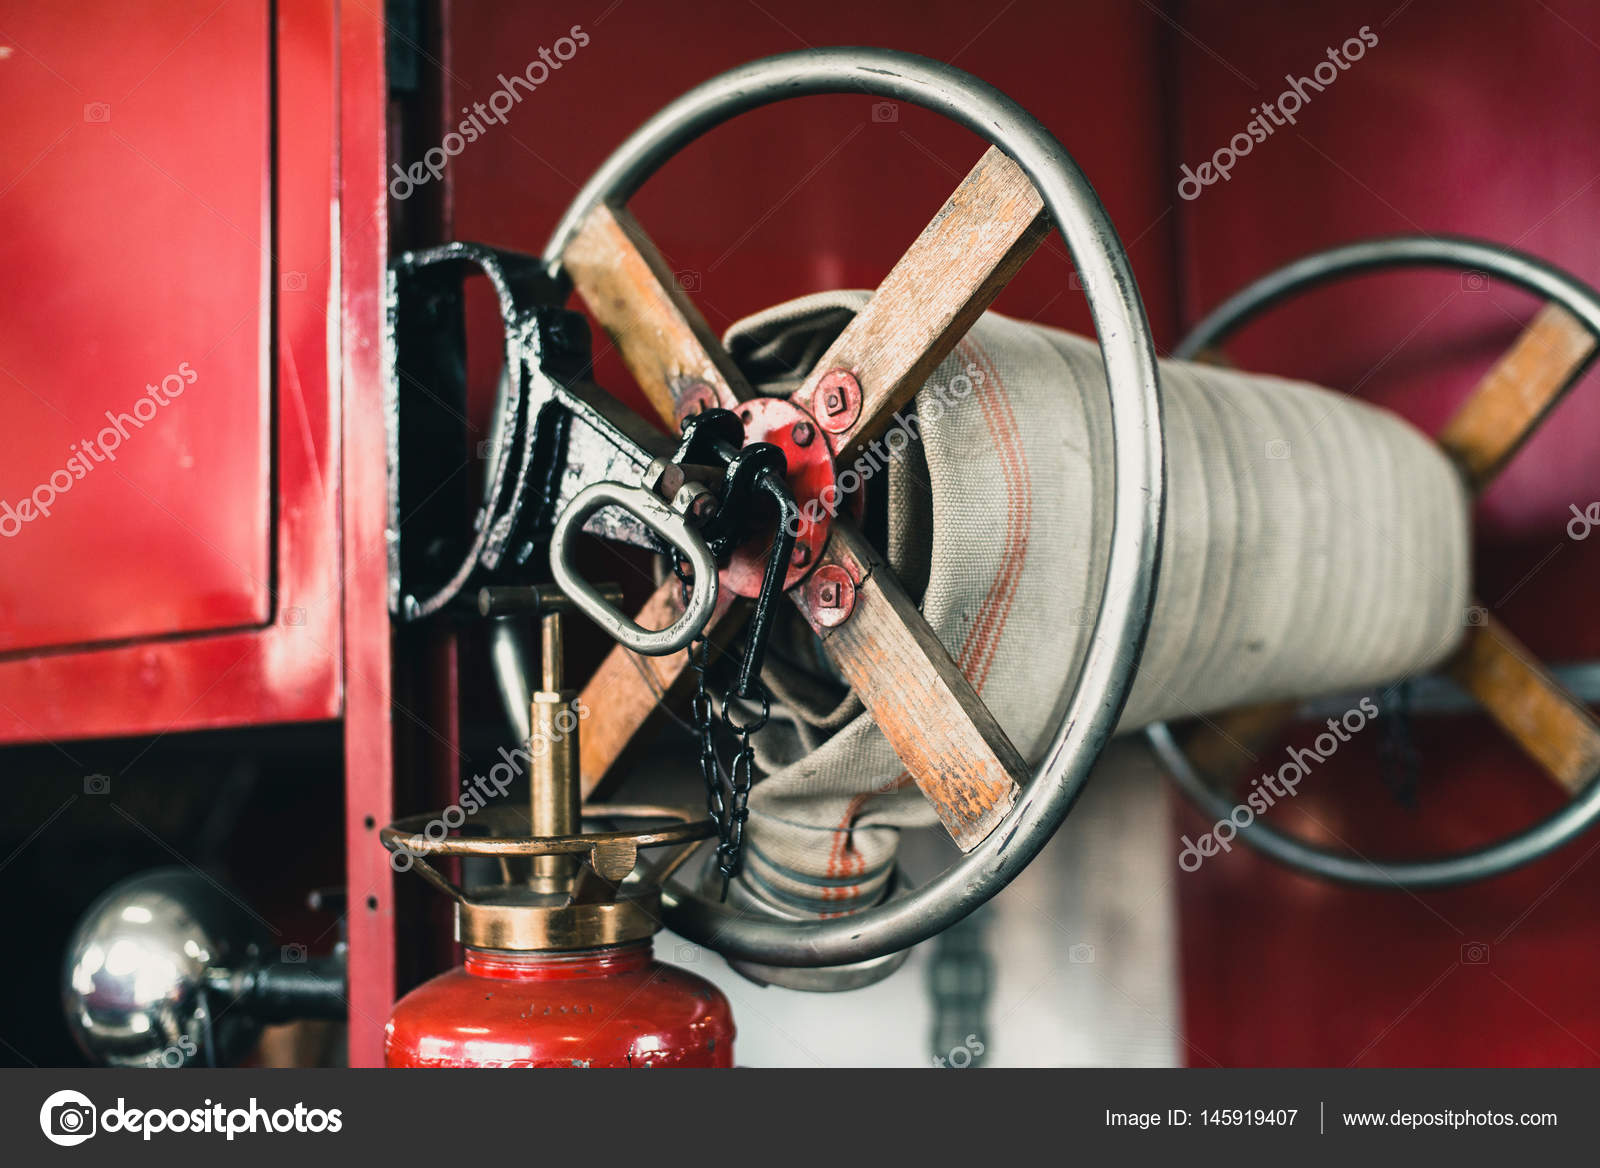 https://st3.depositphotos.com/1550494/14591/i/1600/depositphotos_145919407-stock-photo-close-up-of-coiled-fire.jpg